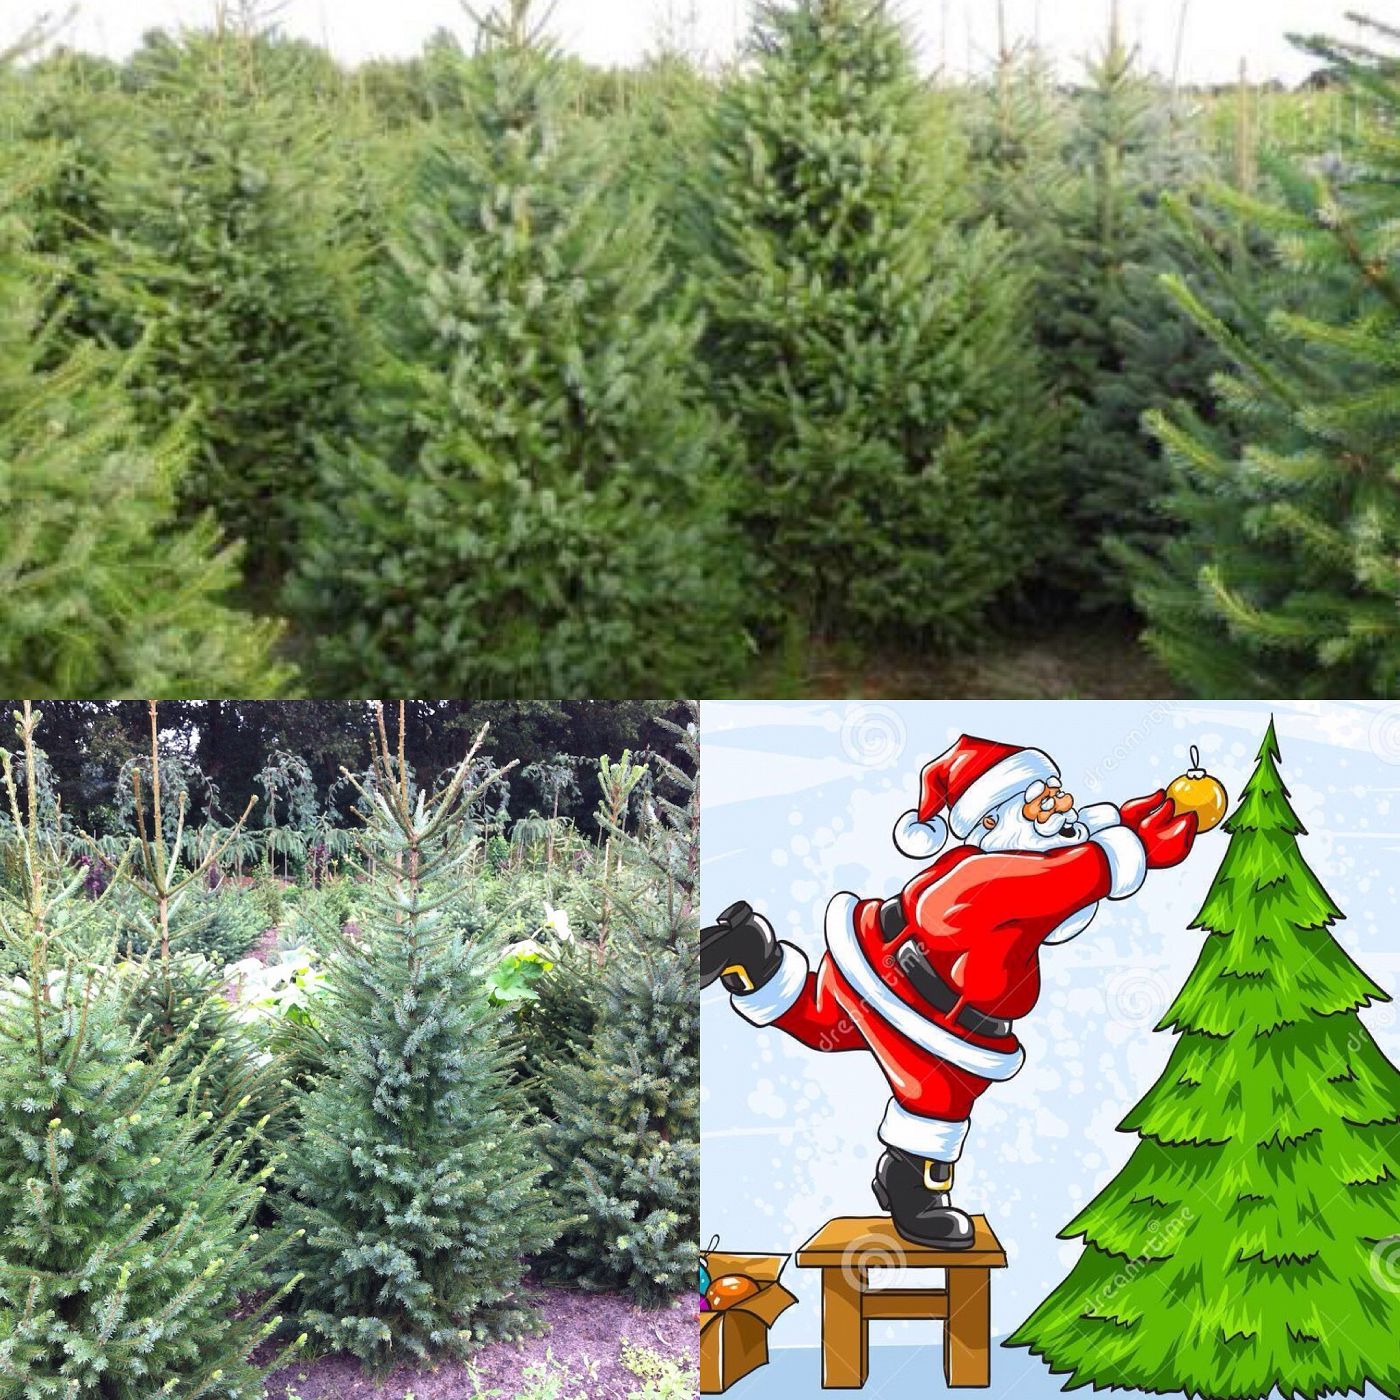 Amerika Hoop van Bevestigen Start Kerstbomen verkoop - De winkel van Boer Arie